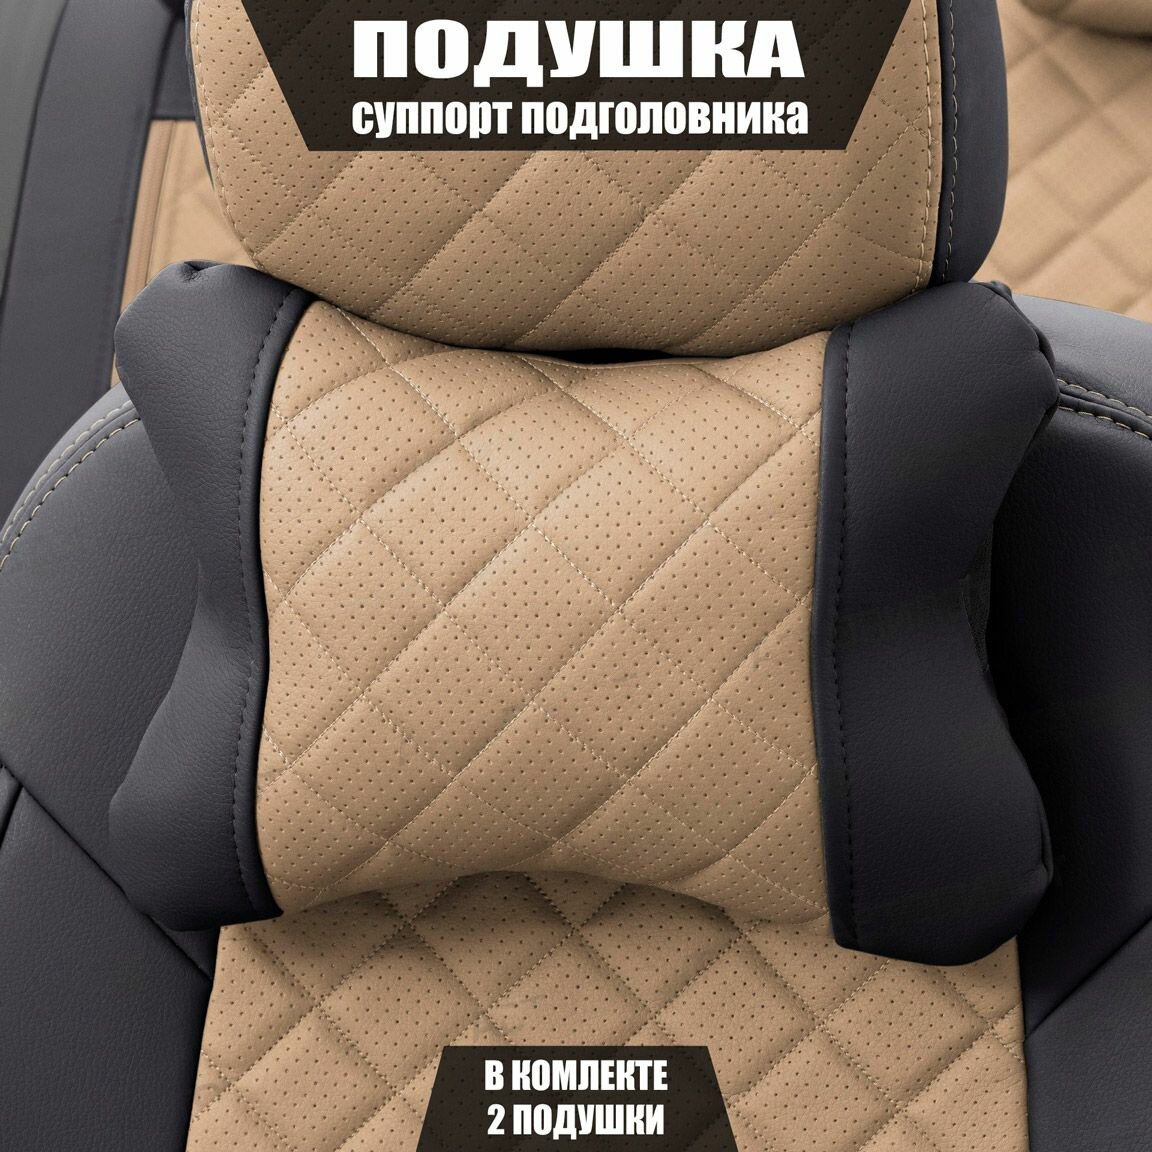 Подушки под шею (суппорт подголовника) для Хендай Элантра (2018 - 2020) хэтчбек 5 дверей / Hyundai Elantra Ромб Экокожа 2 подушки Черный